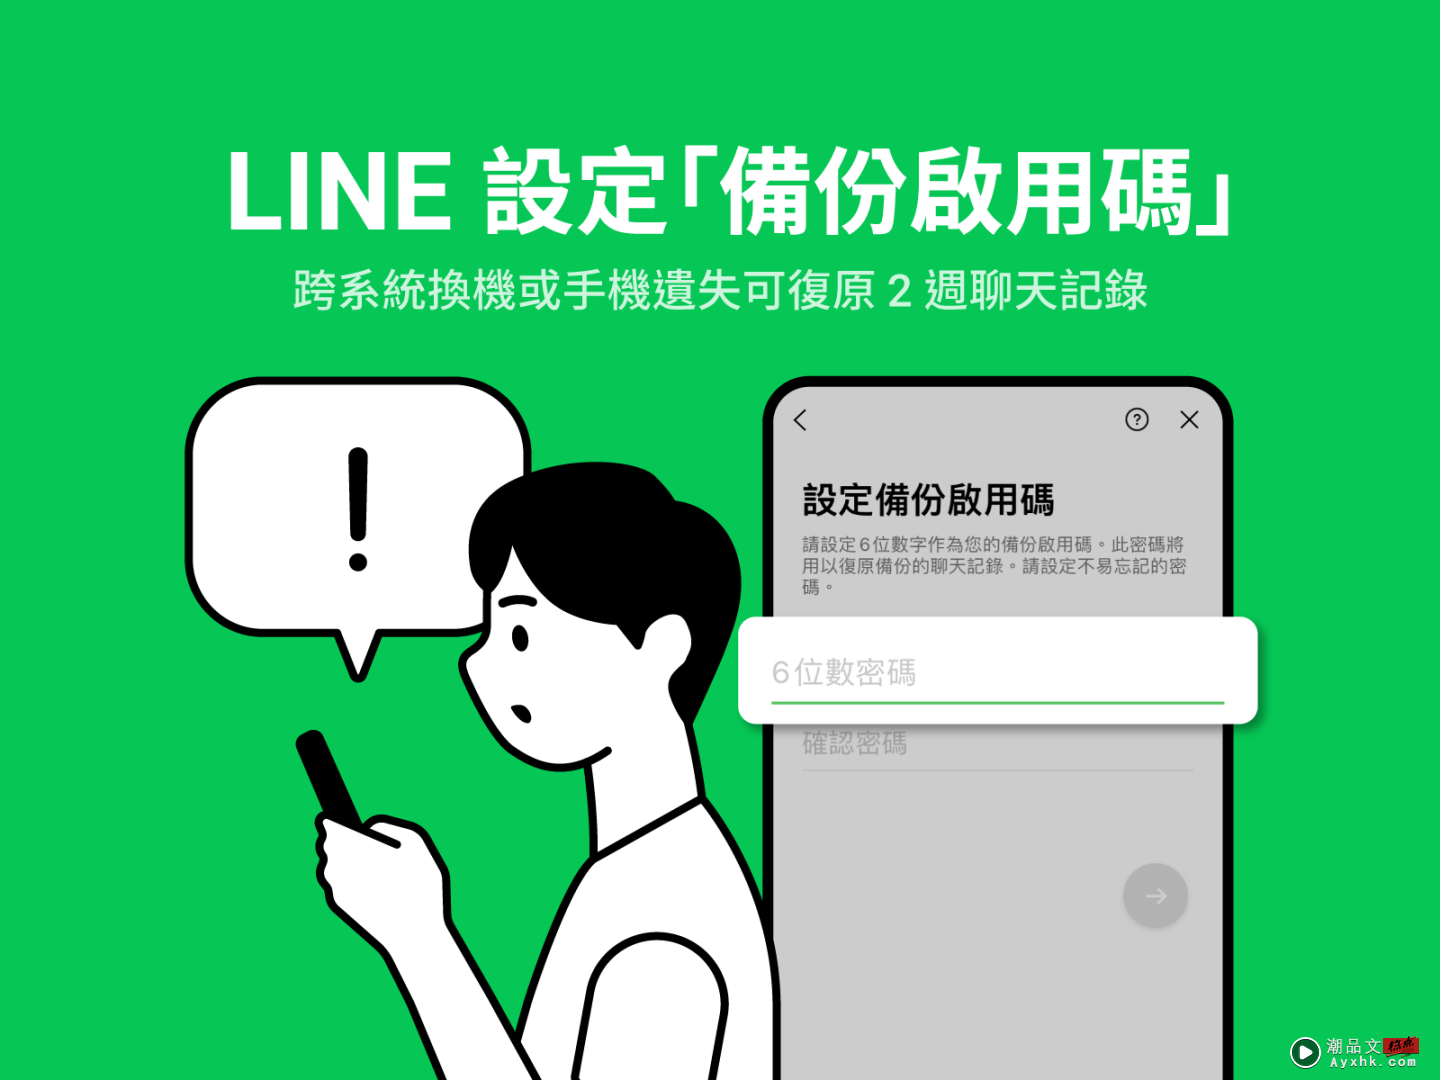 LINE 推出‘ 备份启用码 ’新功能！遗失手机／跨系统换机 可保留 14 天的对话记录 数码科技 图1张